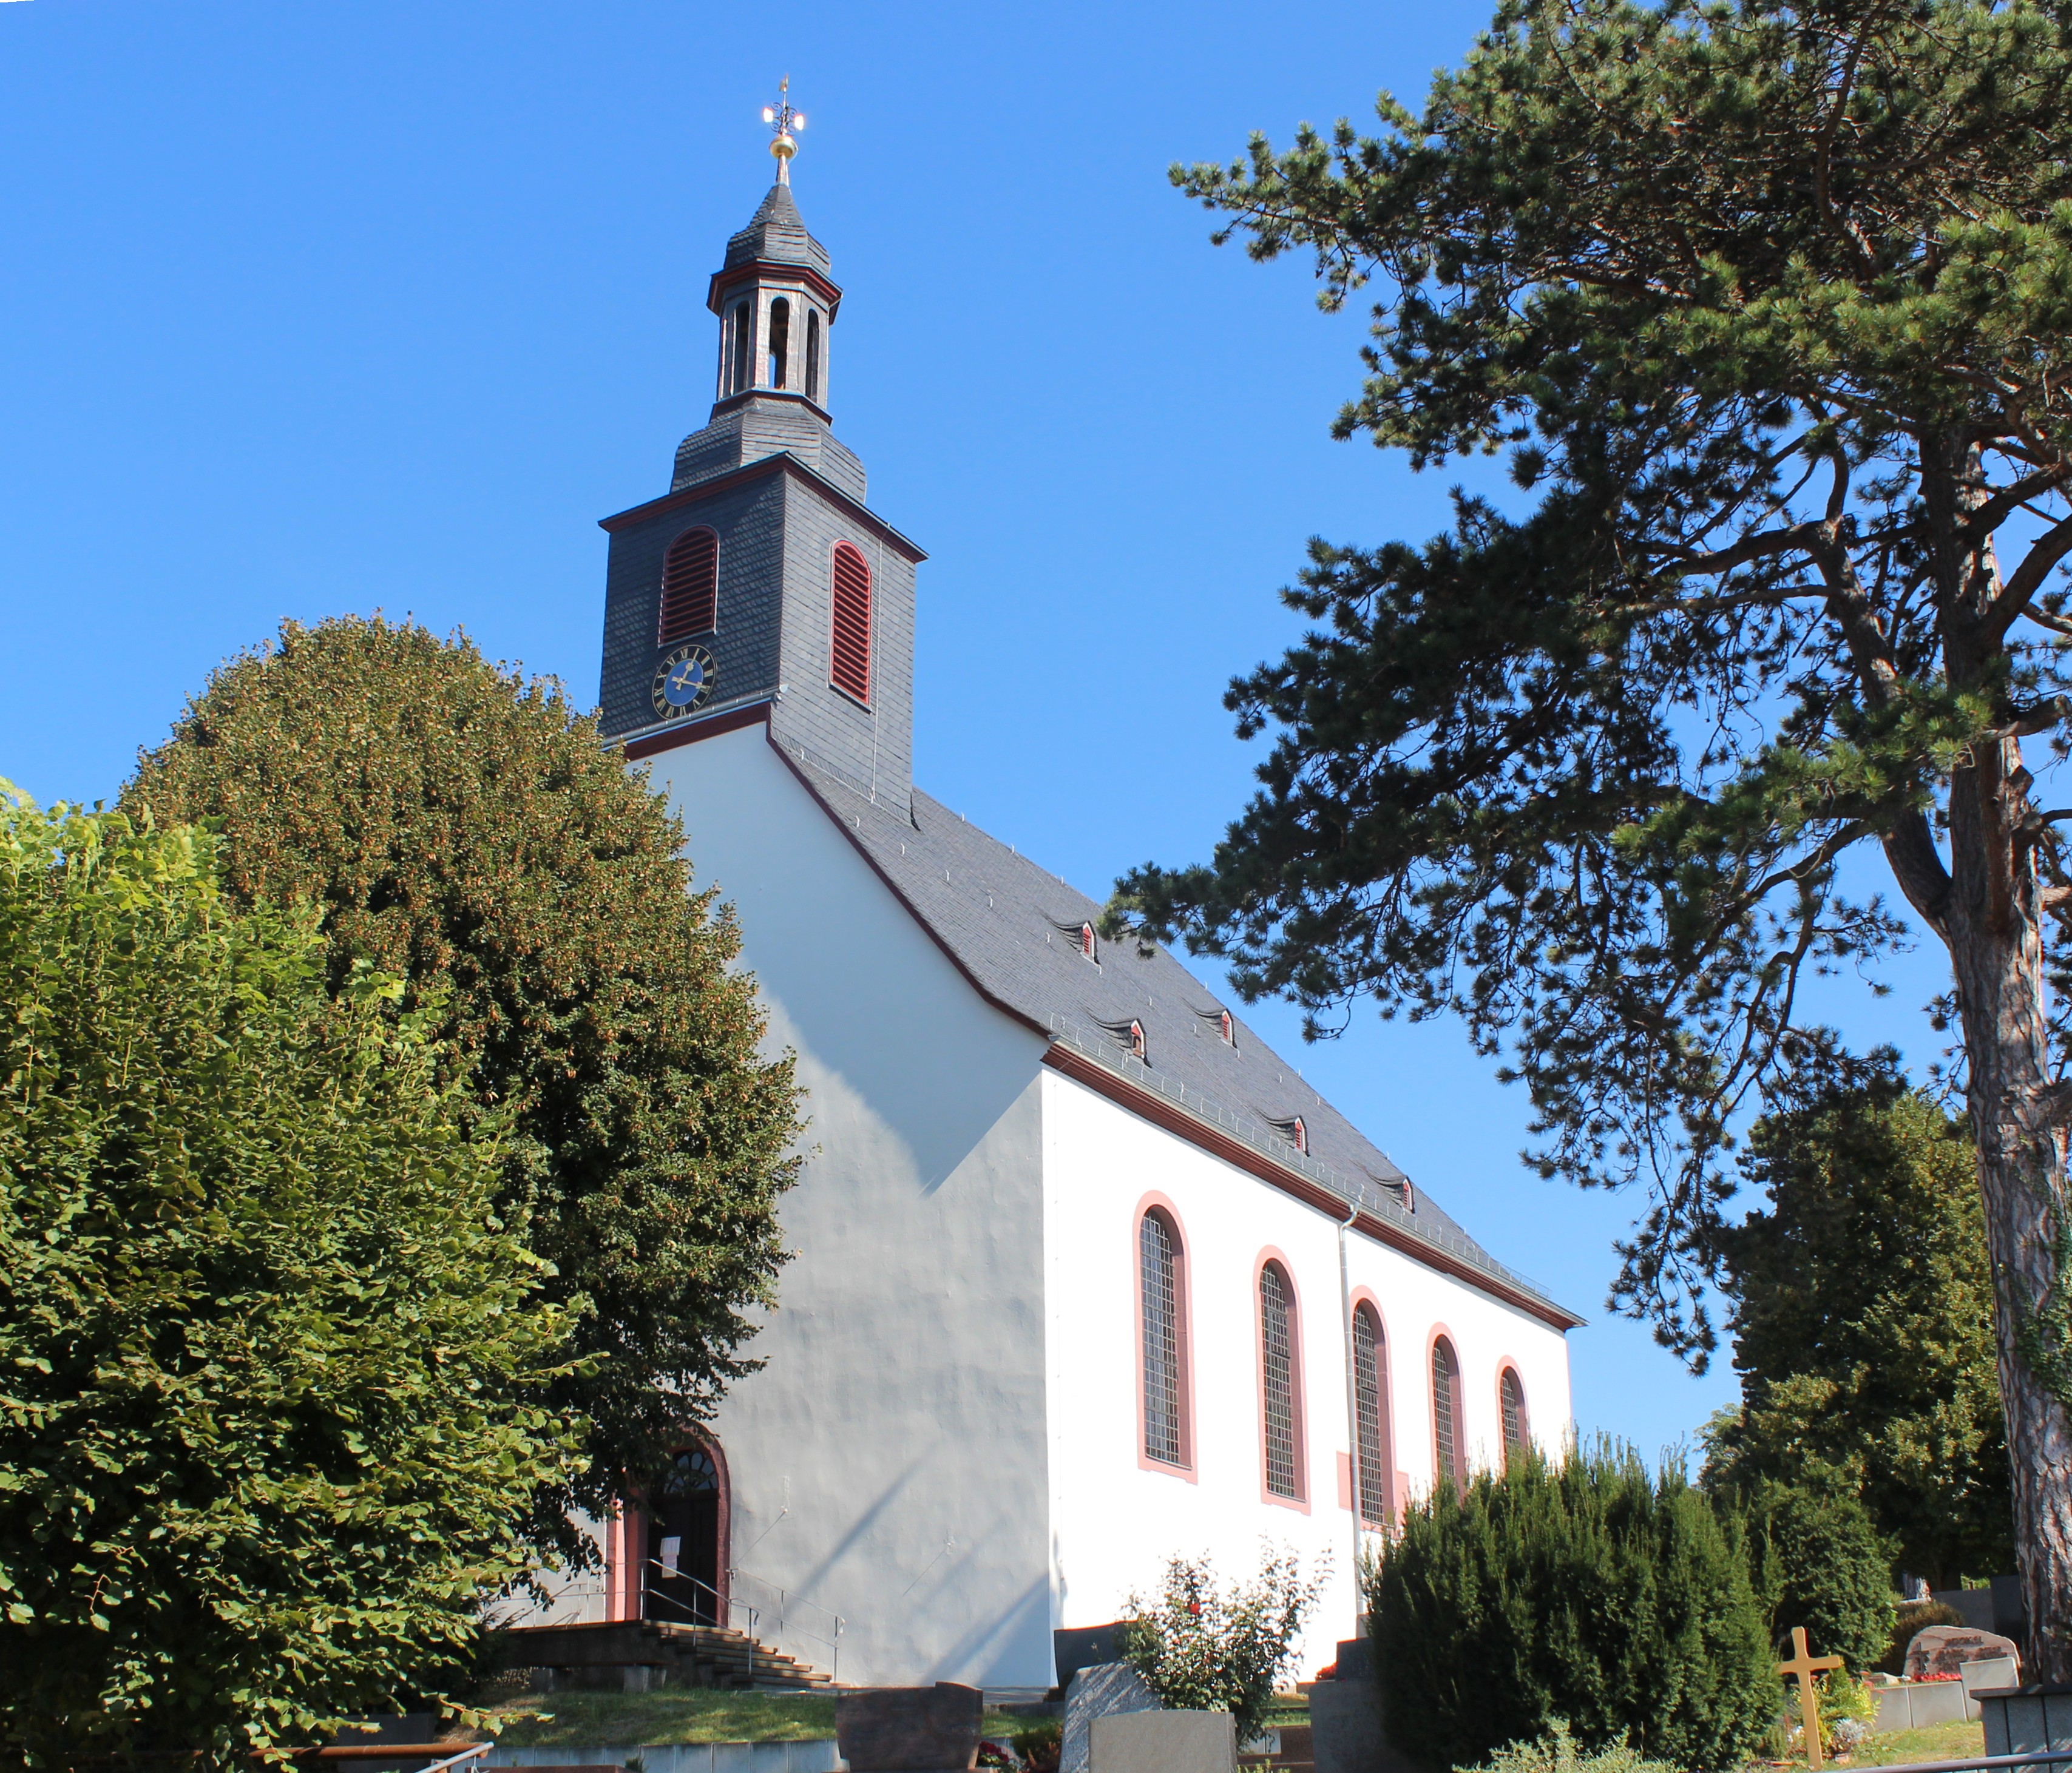 Bild 1 Evangelische Kirche Ober-Ramstadt - Evangelische Kirchengemeinde Ober-Ramstadt in Ober-Ramstadt